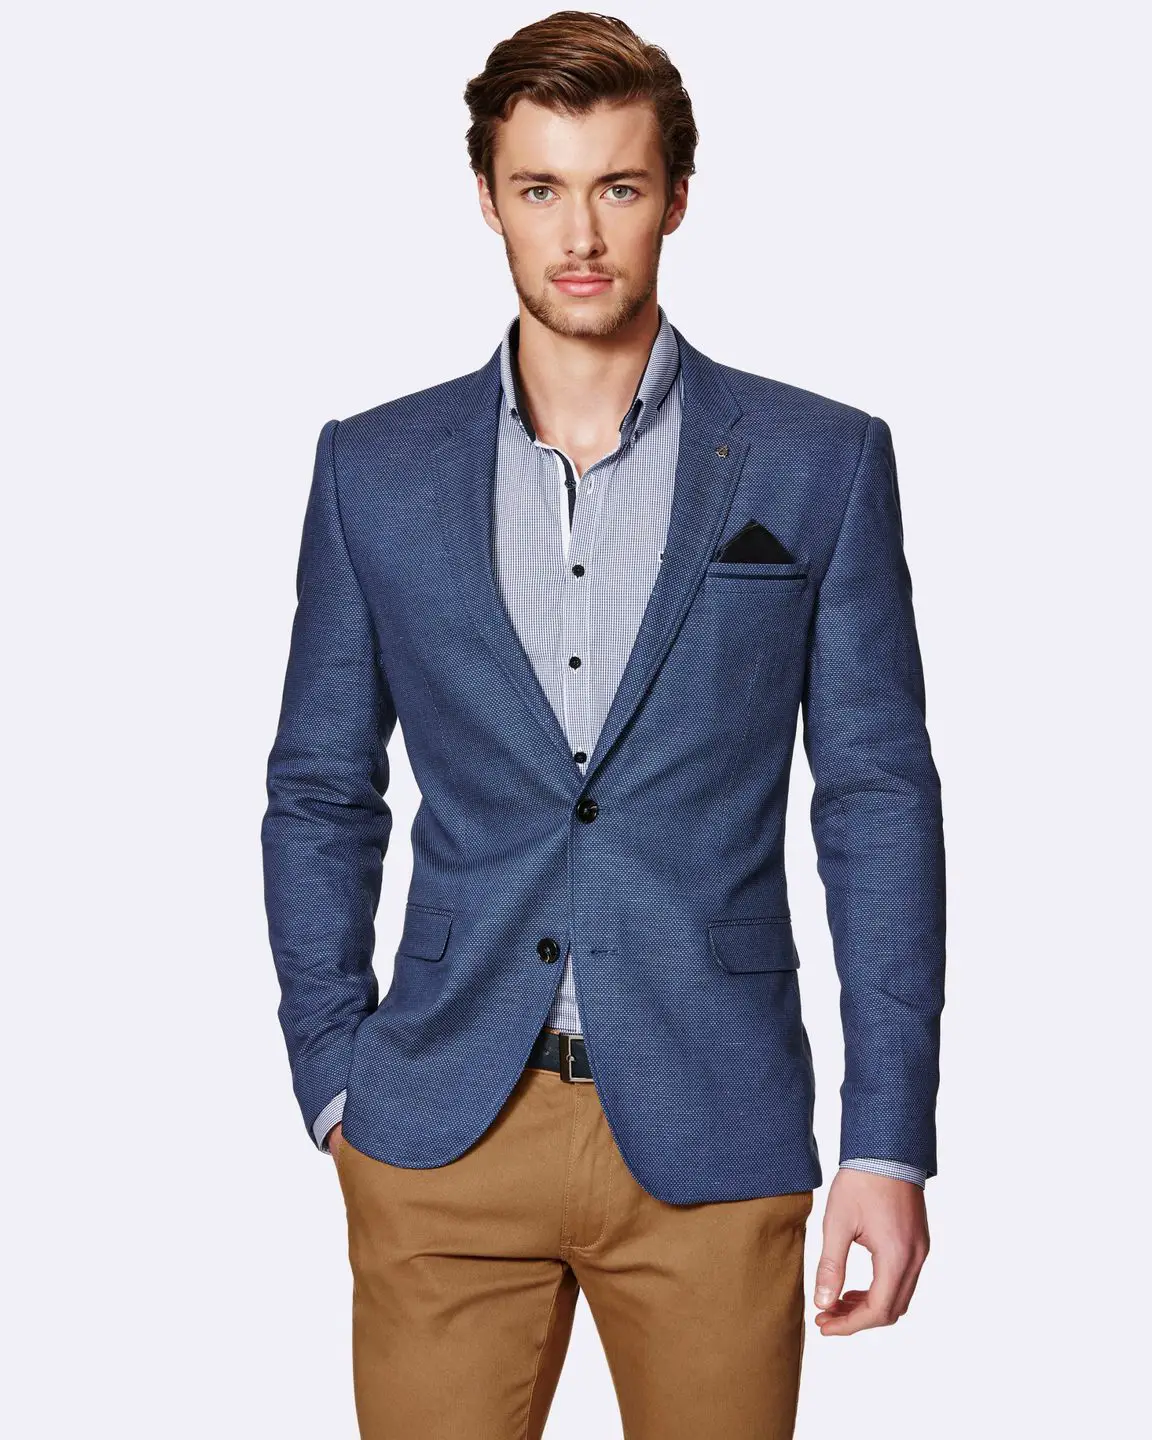 20 Tendencias en ropa moda para hombres